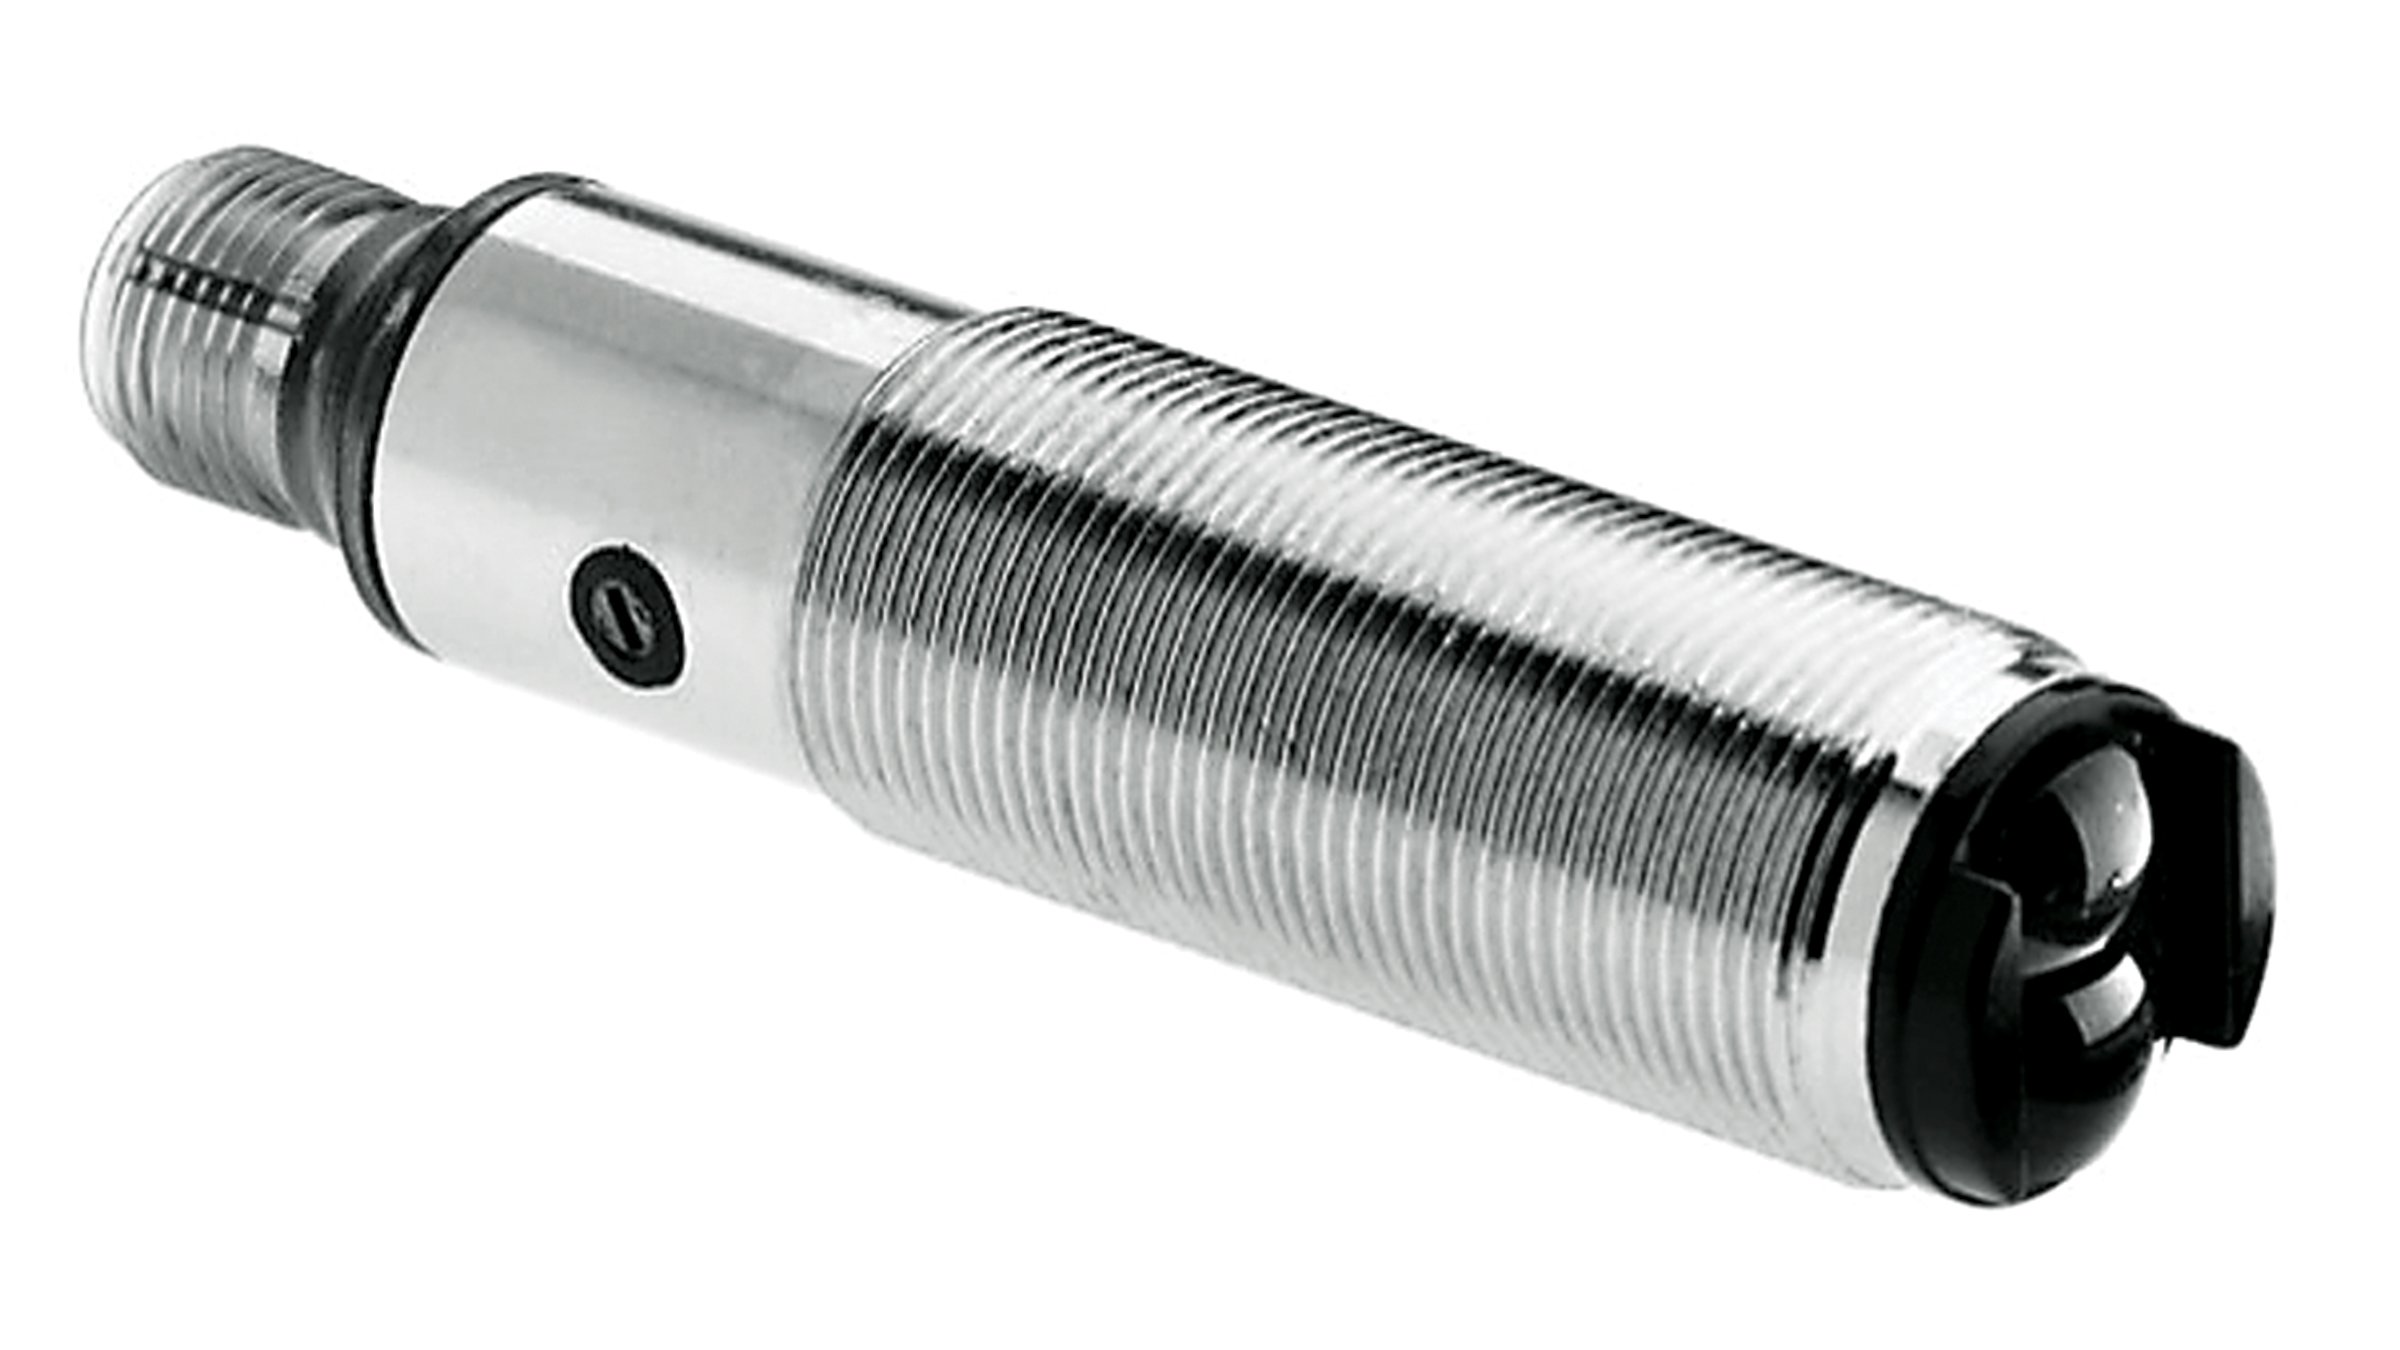 Zylindrischer Sensor von Allen-Bradley aus Edelstahl mit Faden.